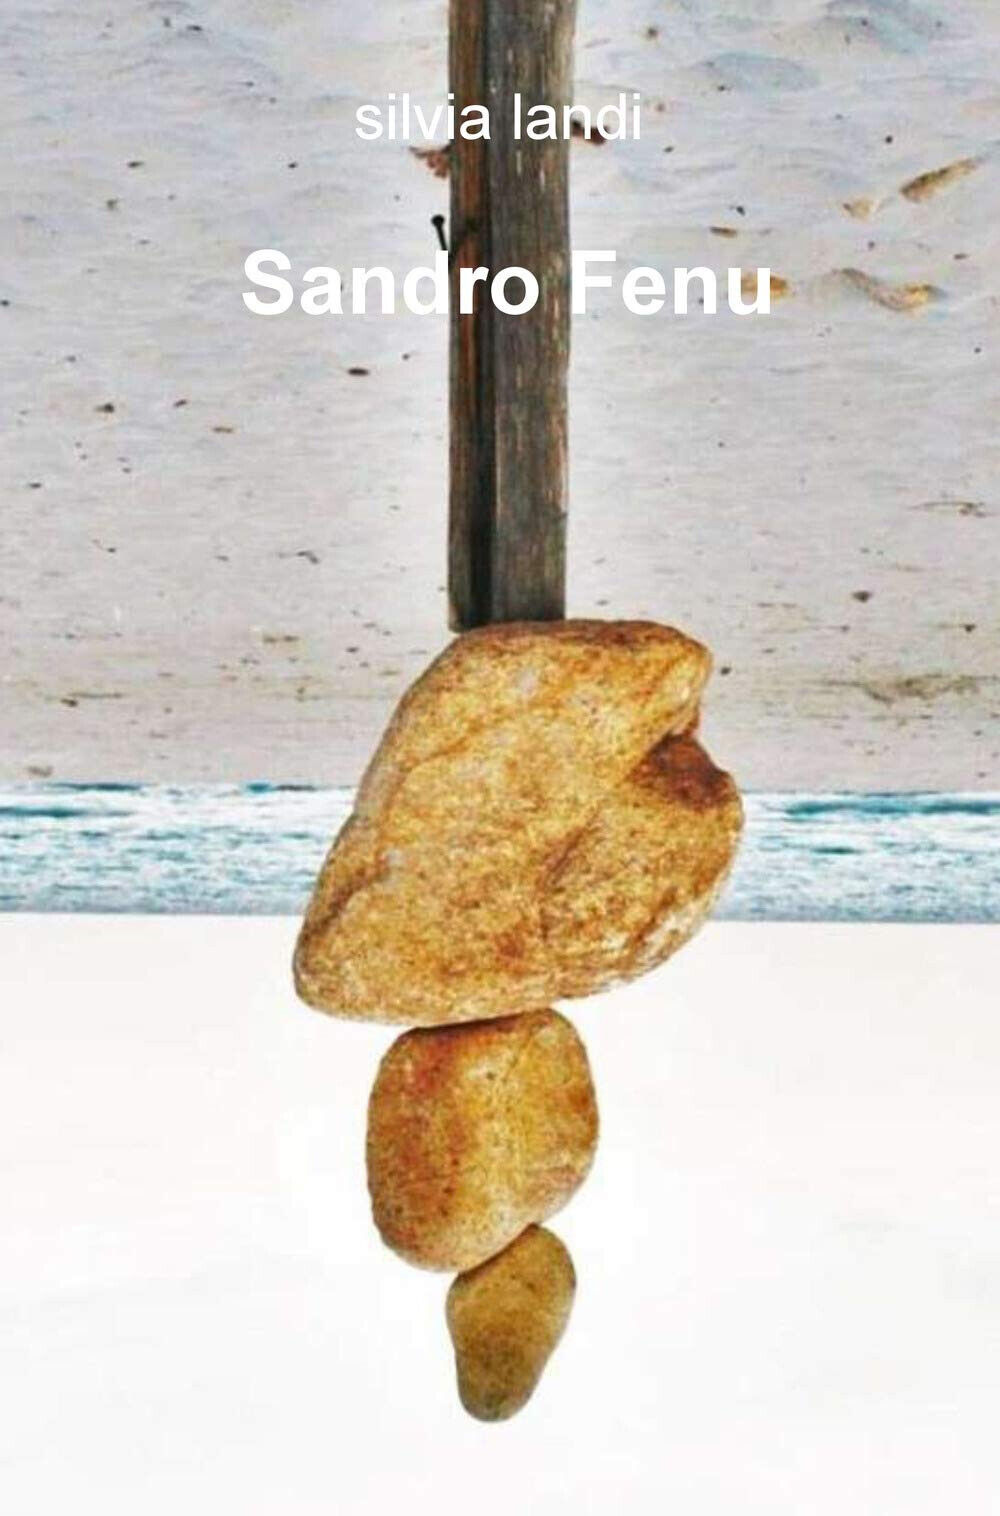 Sandro Fenu. Ediz. illustrata - Silvia Landi - ilmiolibro, 2019